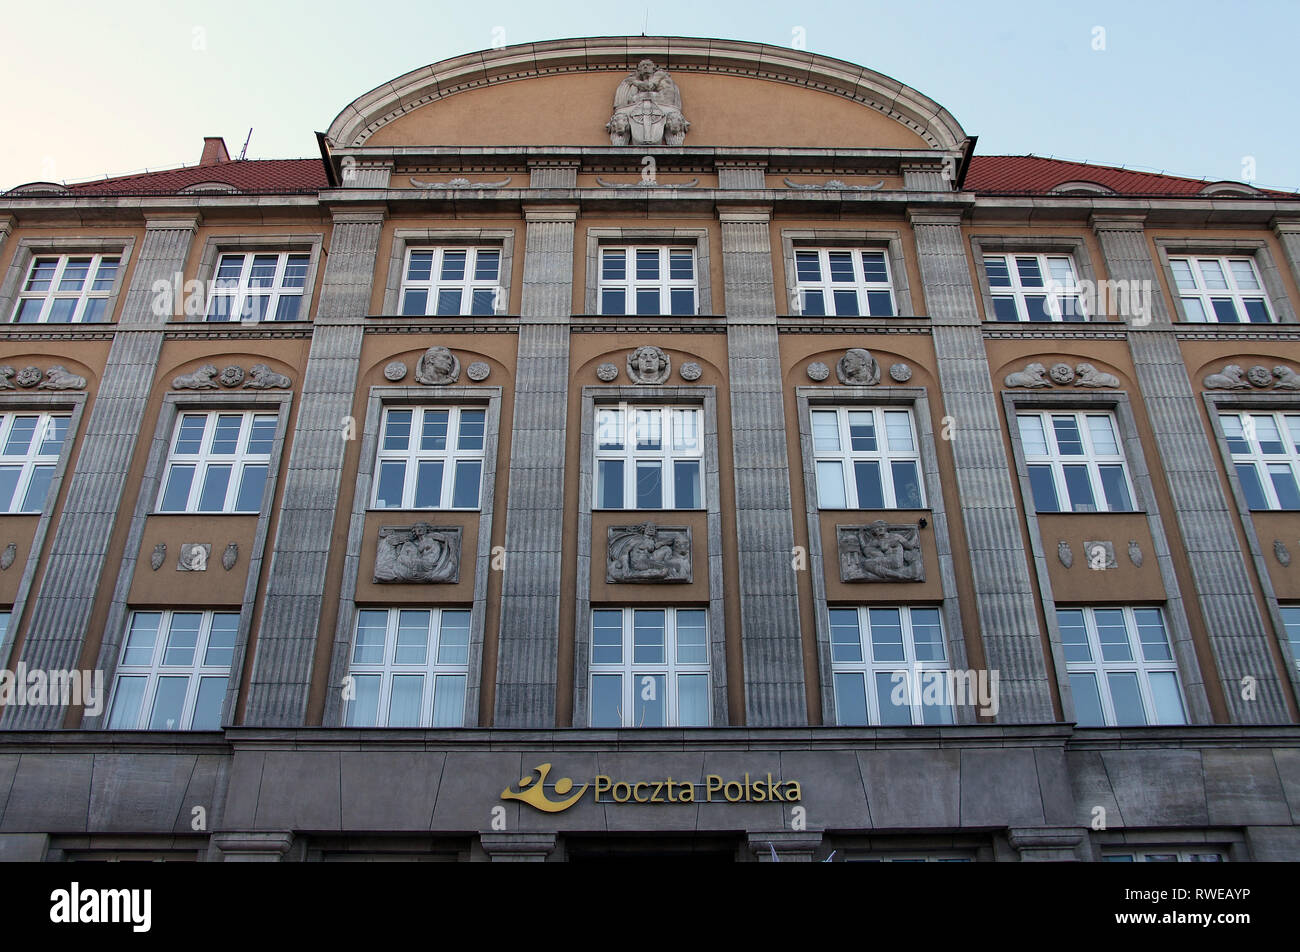 Polish Post building in Gdansk Stock Photo